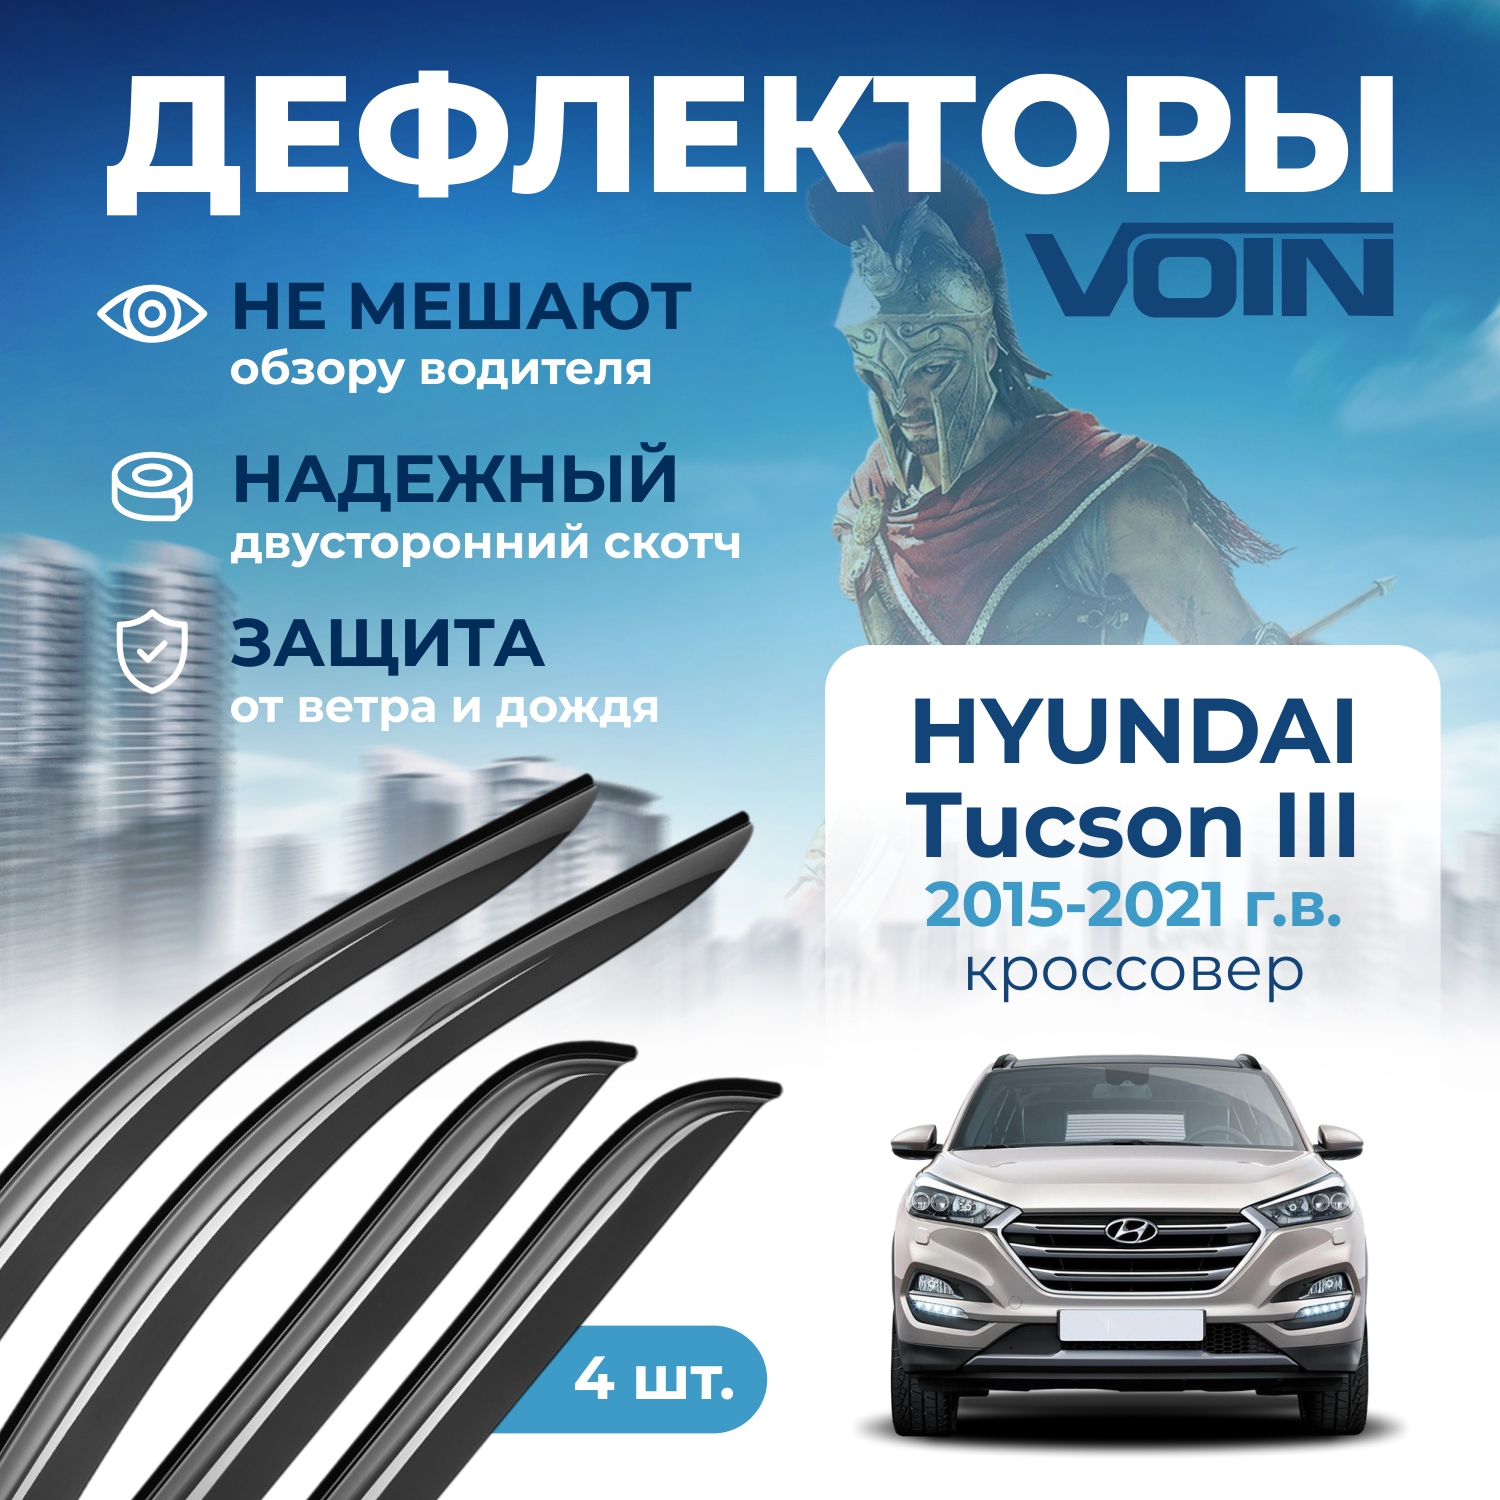 Дефлекторы окон Voin на авто Hyundai Tucson III 2015-н.в., кроссовер, накладные, к-т 4 шт.